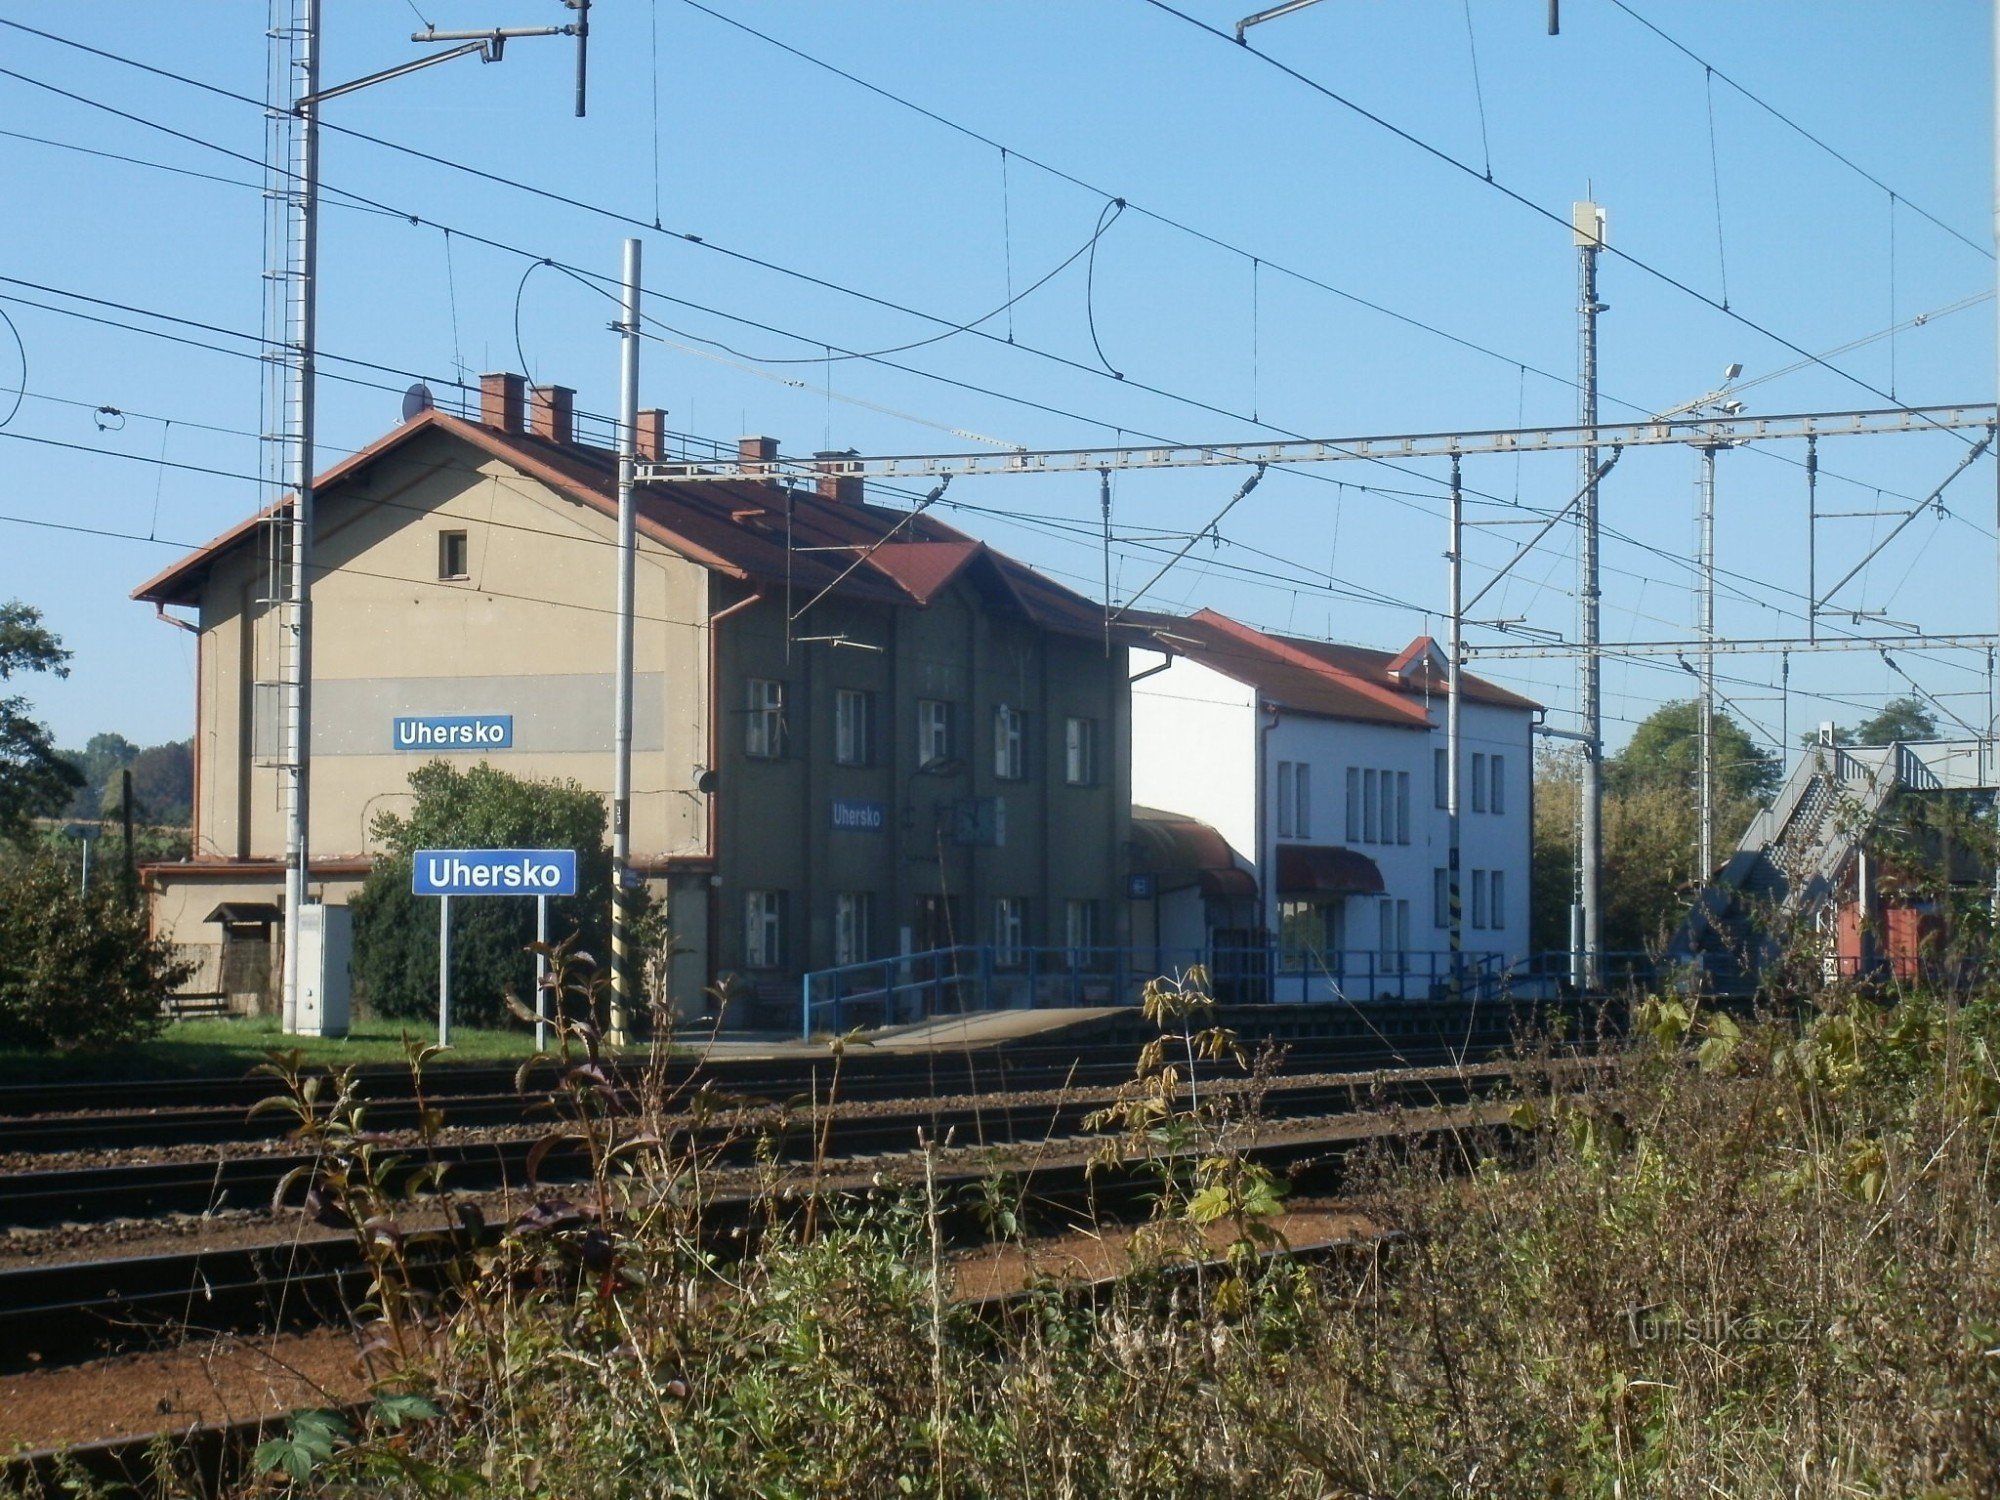 ngã tư du lịch Hungary - đường sắt, nhà ga